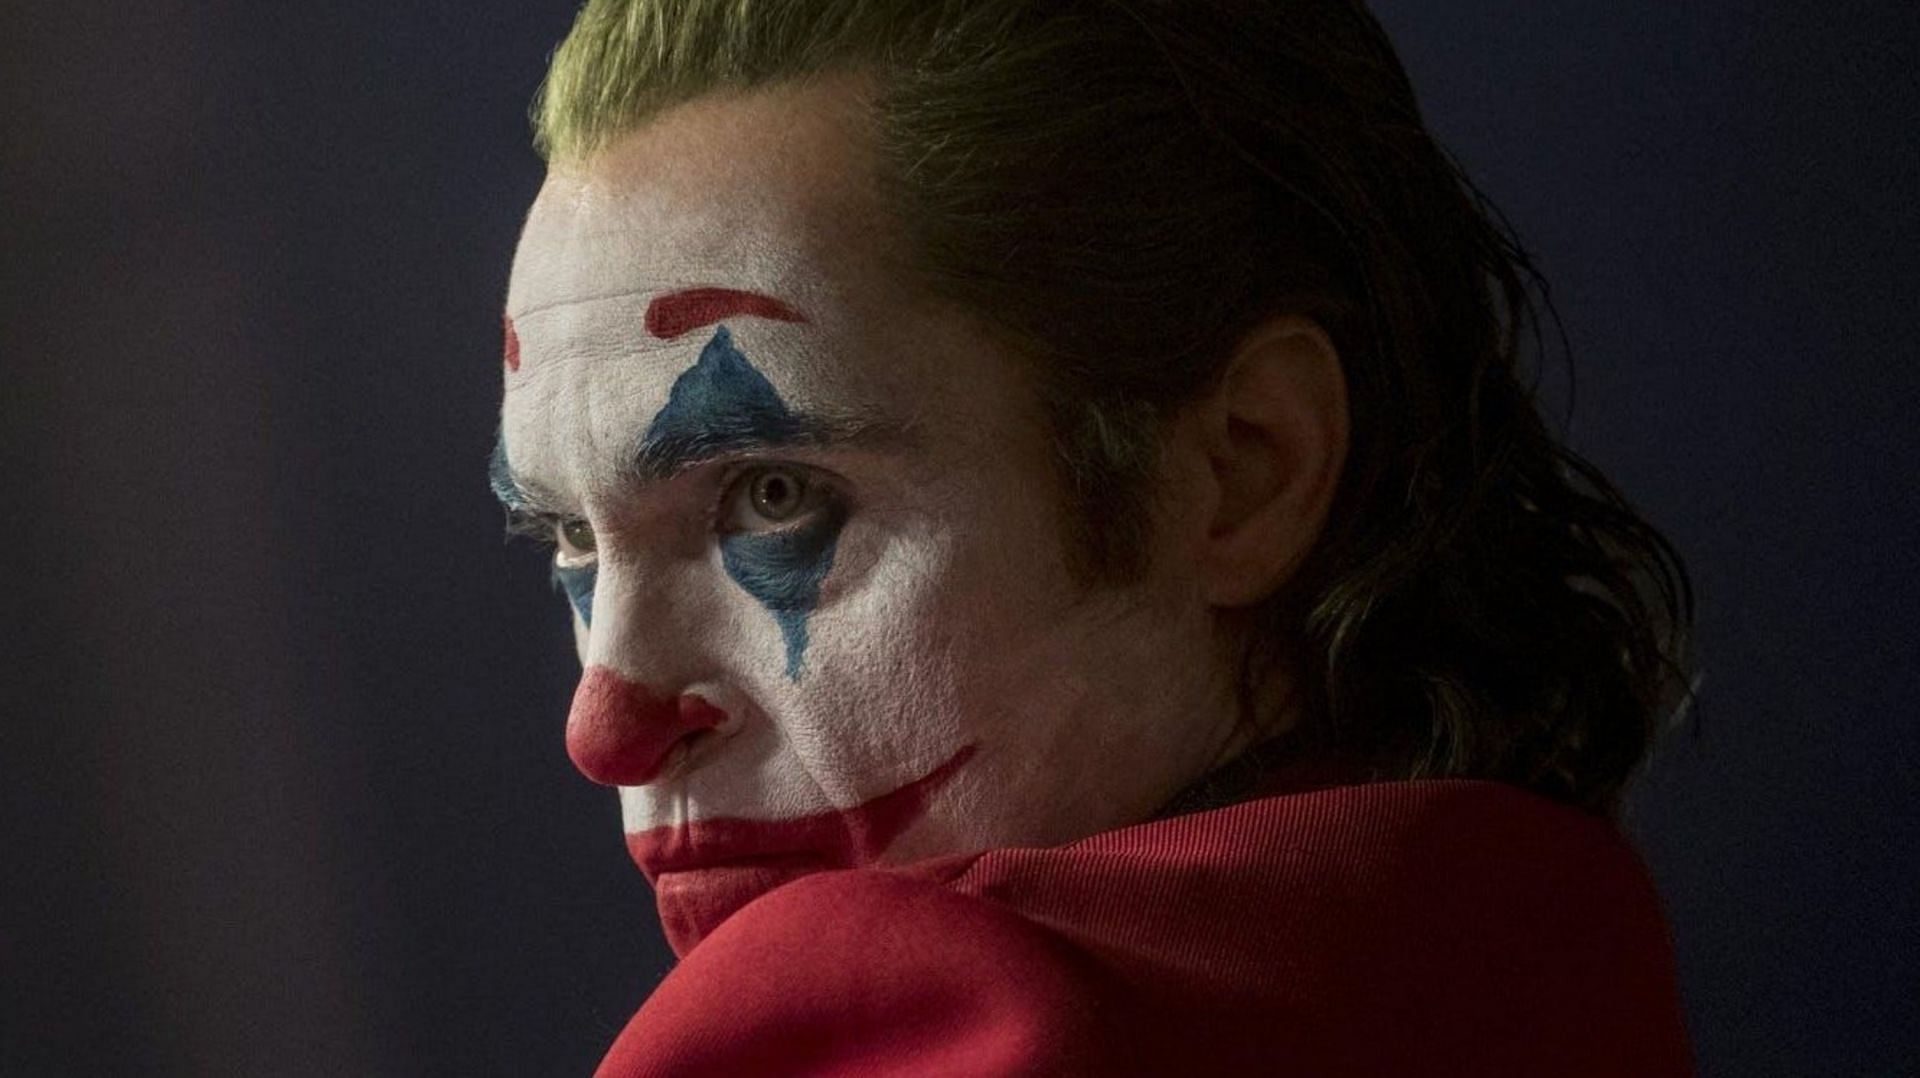 Joaquin Phoenix as Joker (Image via Warner Bros Pictures)